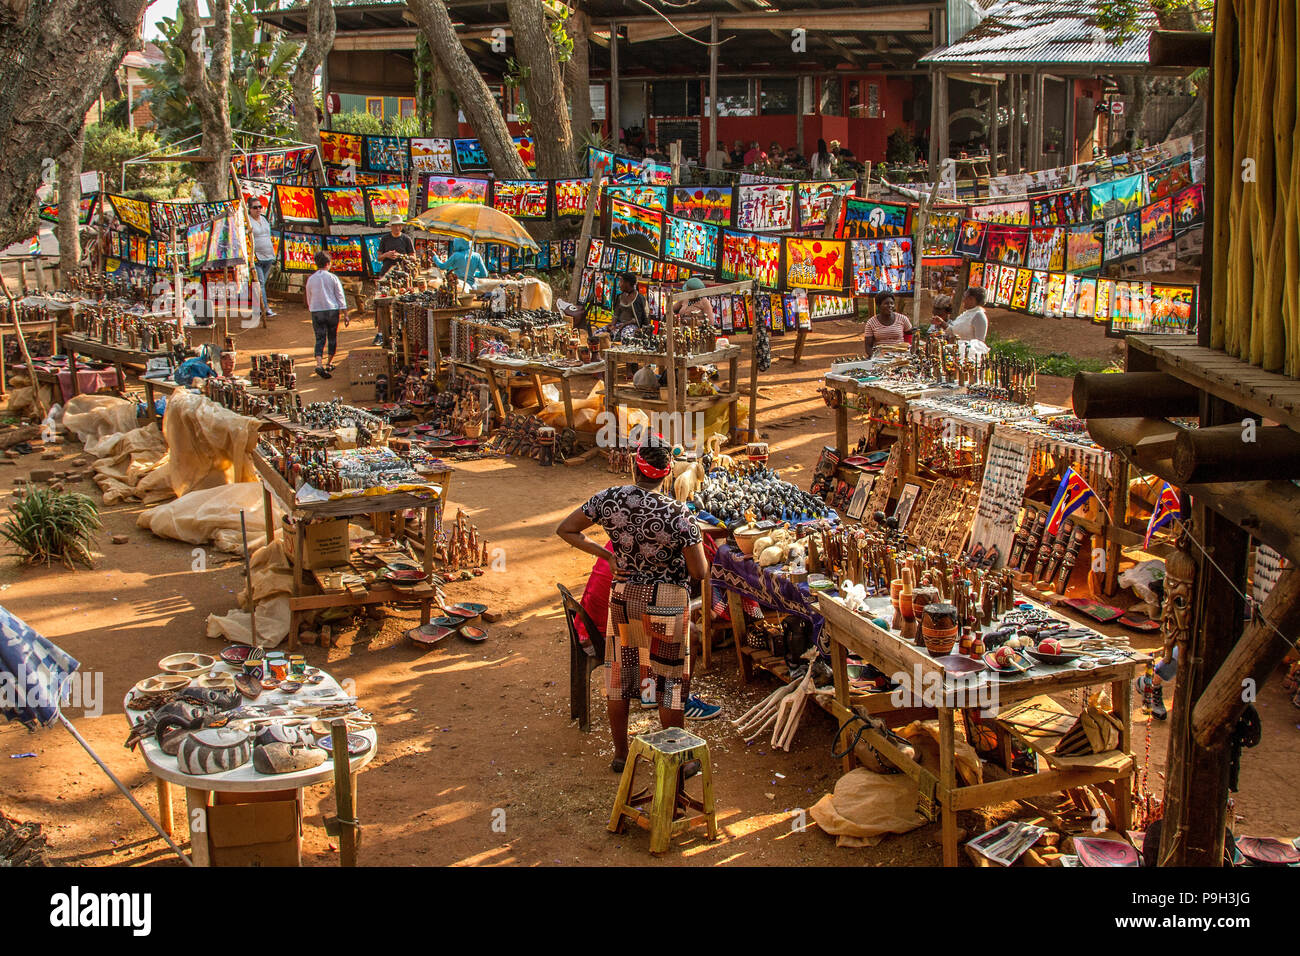 Ezulwini mercado artesanal en Swazilandia, hacia el final de un día ajetreado, mostrando una gran variedad de productos para la venta. Foto de stock